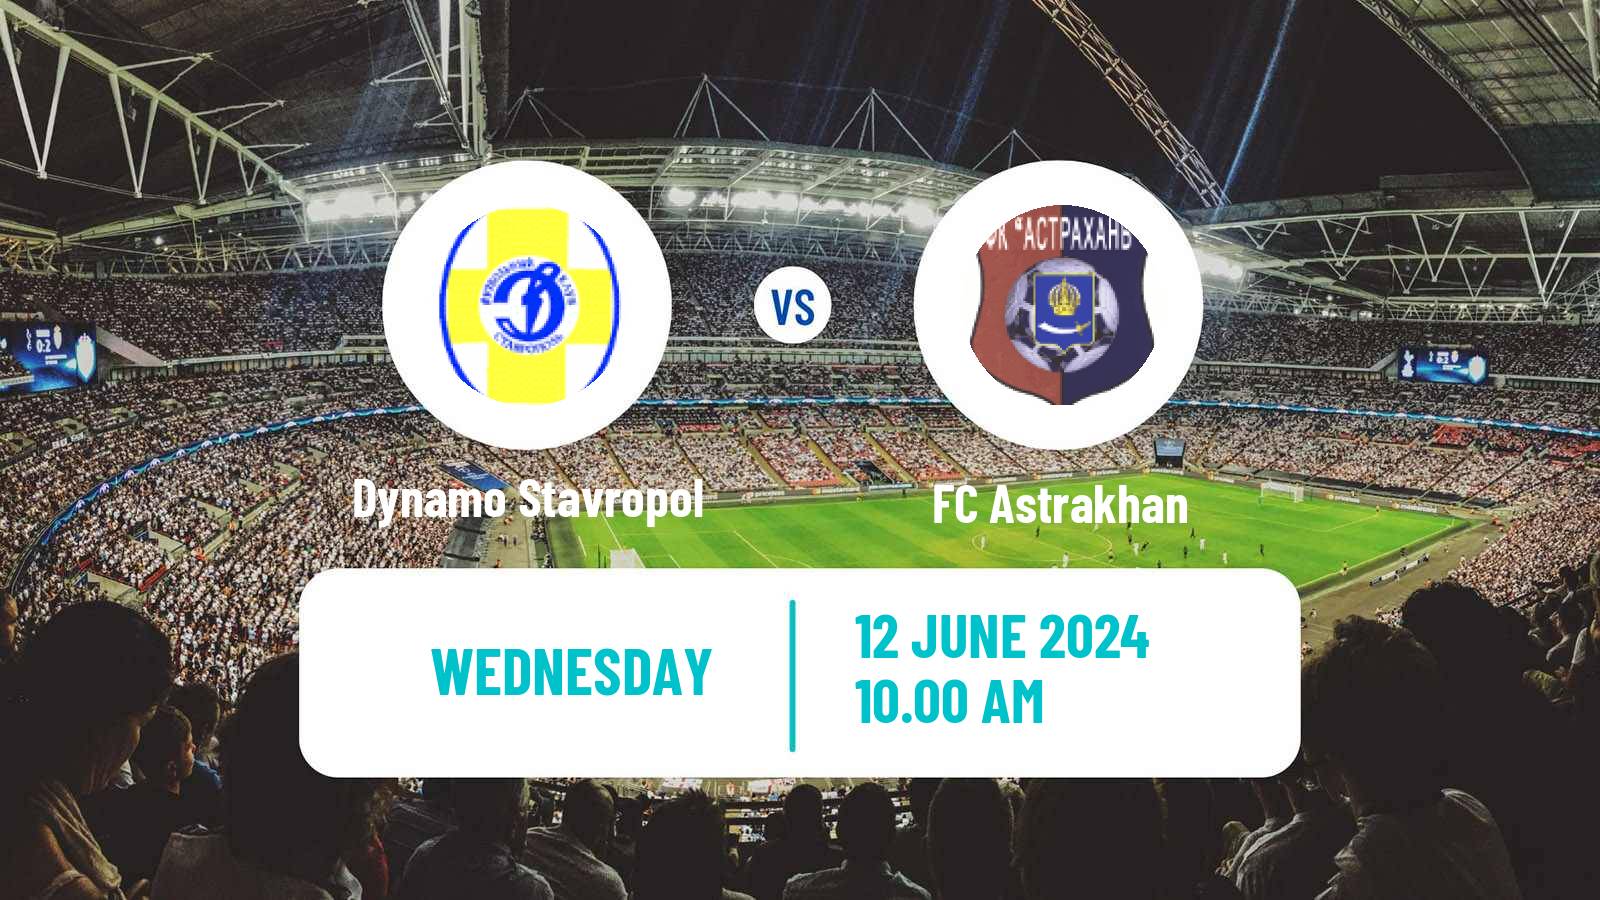 Soccer FNL 2 Division B Group 1 Dynamo Stavropol - Astrakhan